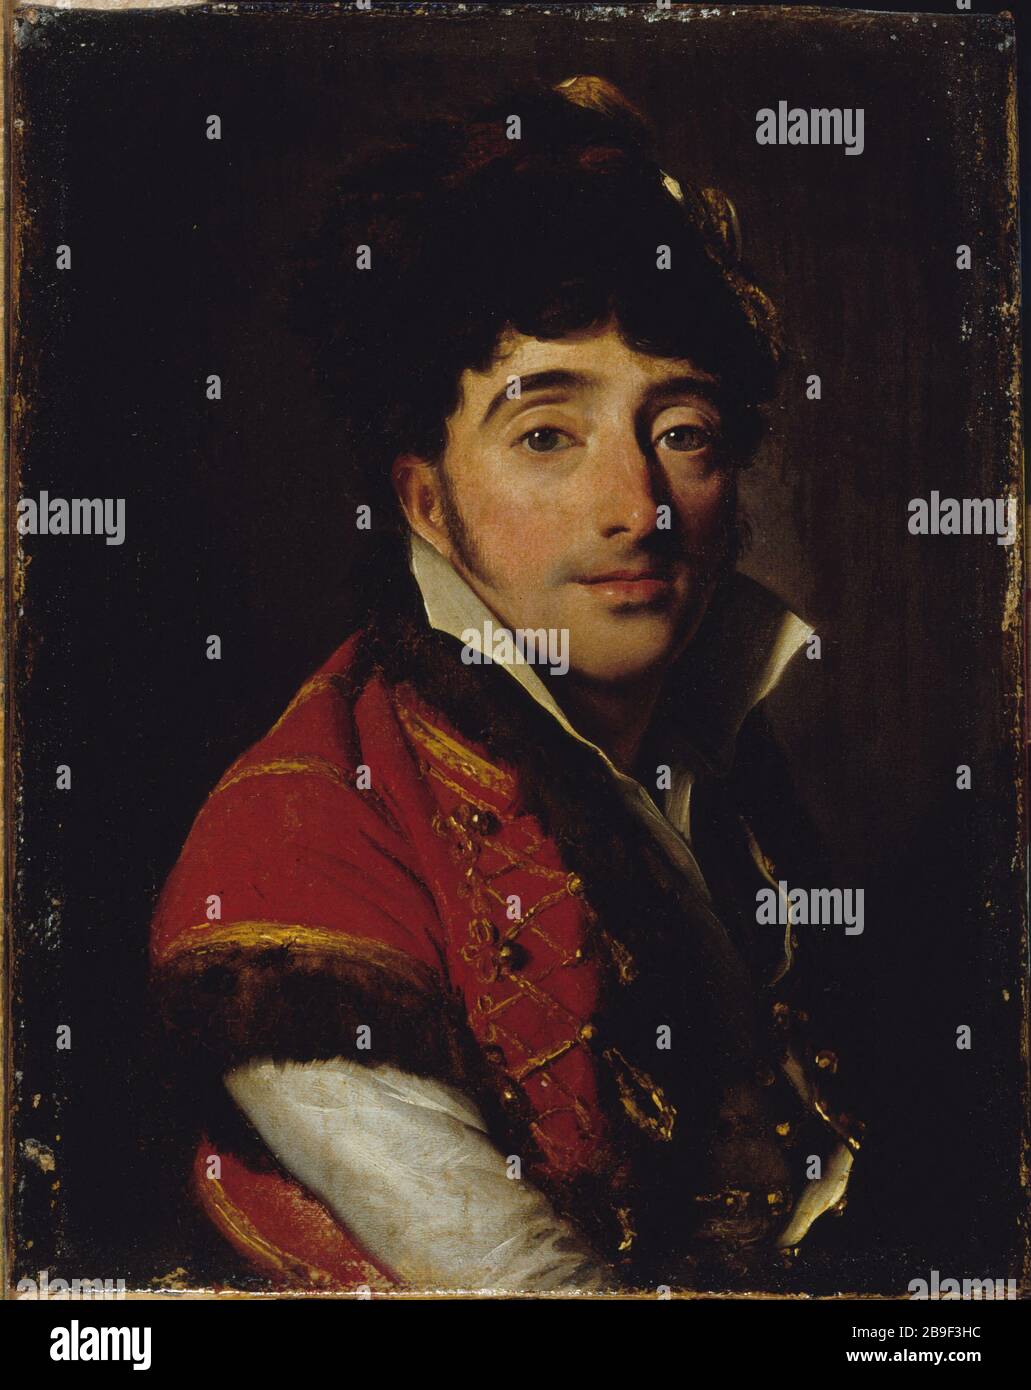 PORTRAIT OF ACTOR Louis-Léopold Boilly (1761-1845). 'Portrait d'acteur'. Huile sur toile. Paris, musée Carnavalet. Stock Photo